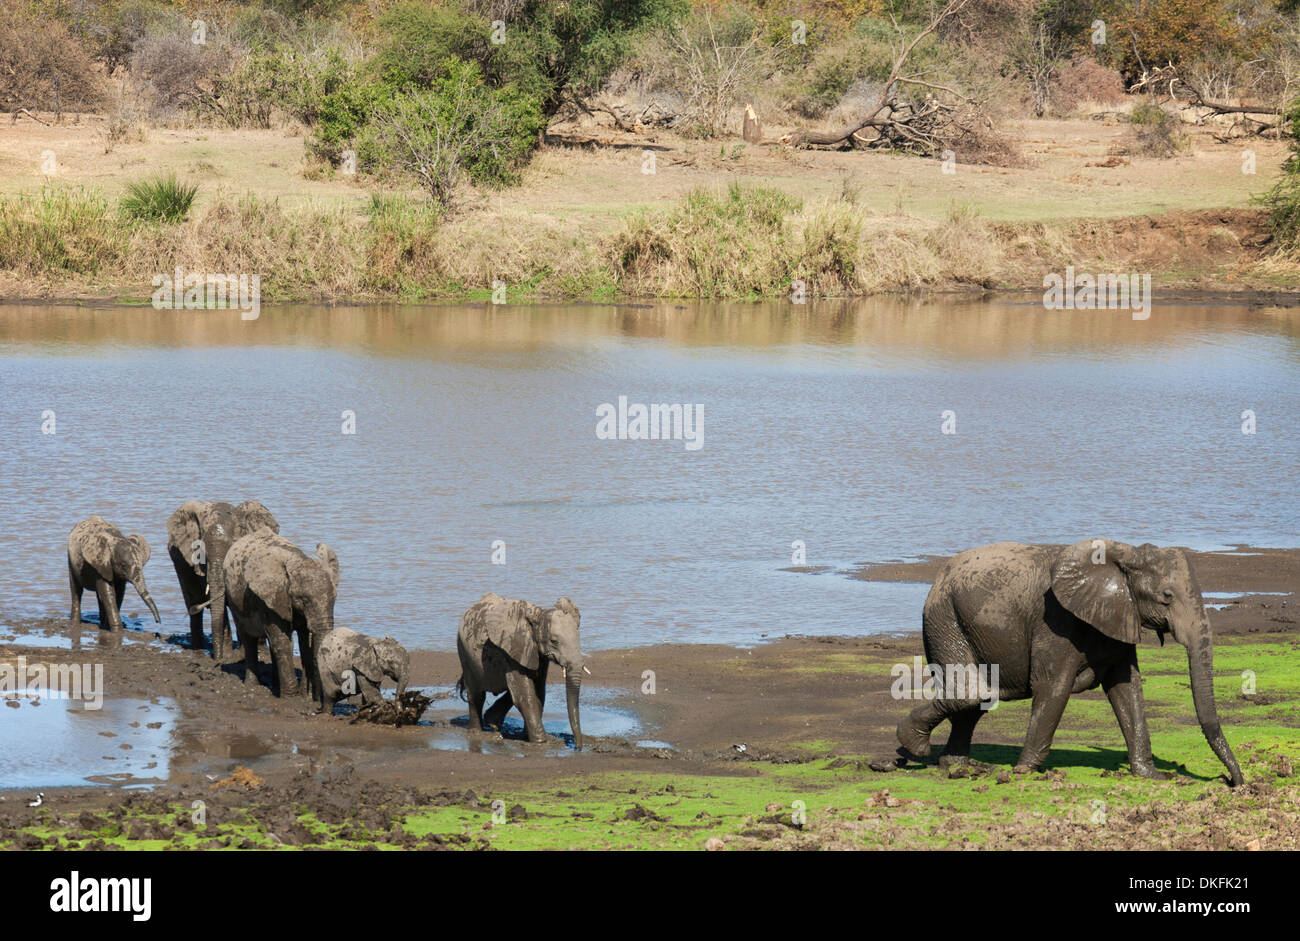 Les éléphants d'Afrique (Loxodonta africana), troupeau sur la rive de la rivière Shingwedzi, Kruger National Park, Afrique du Sud Banque D'Images